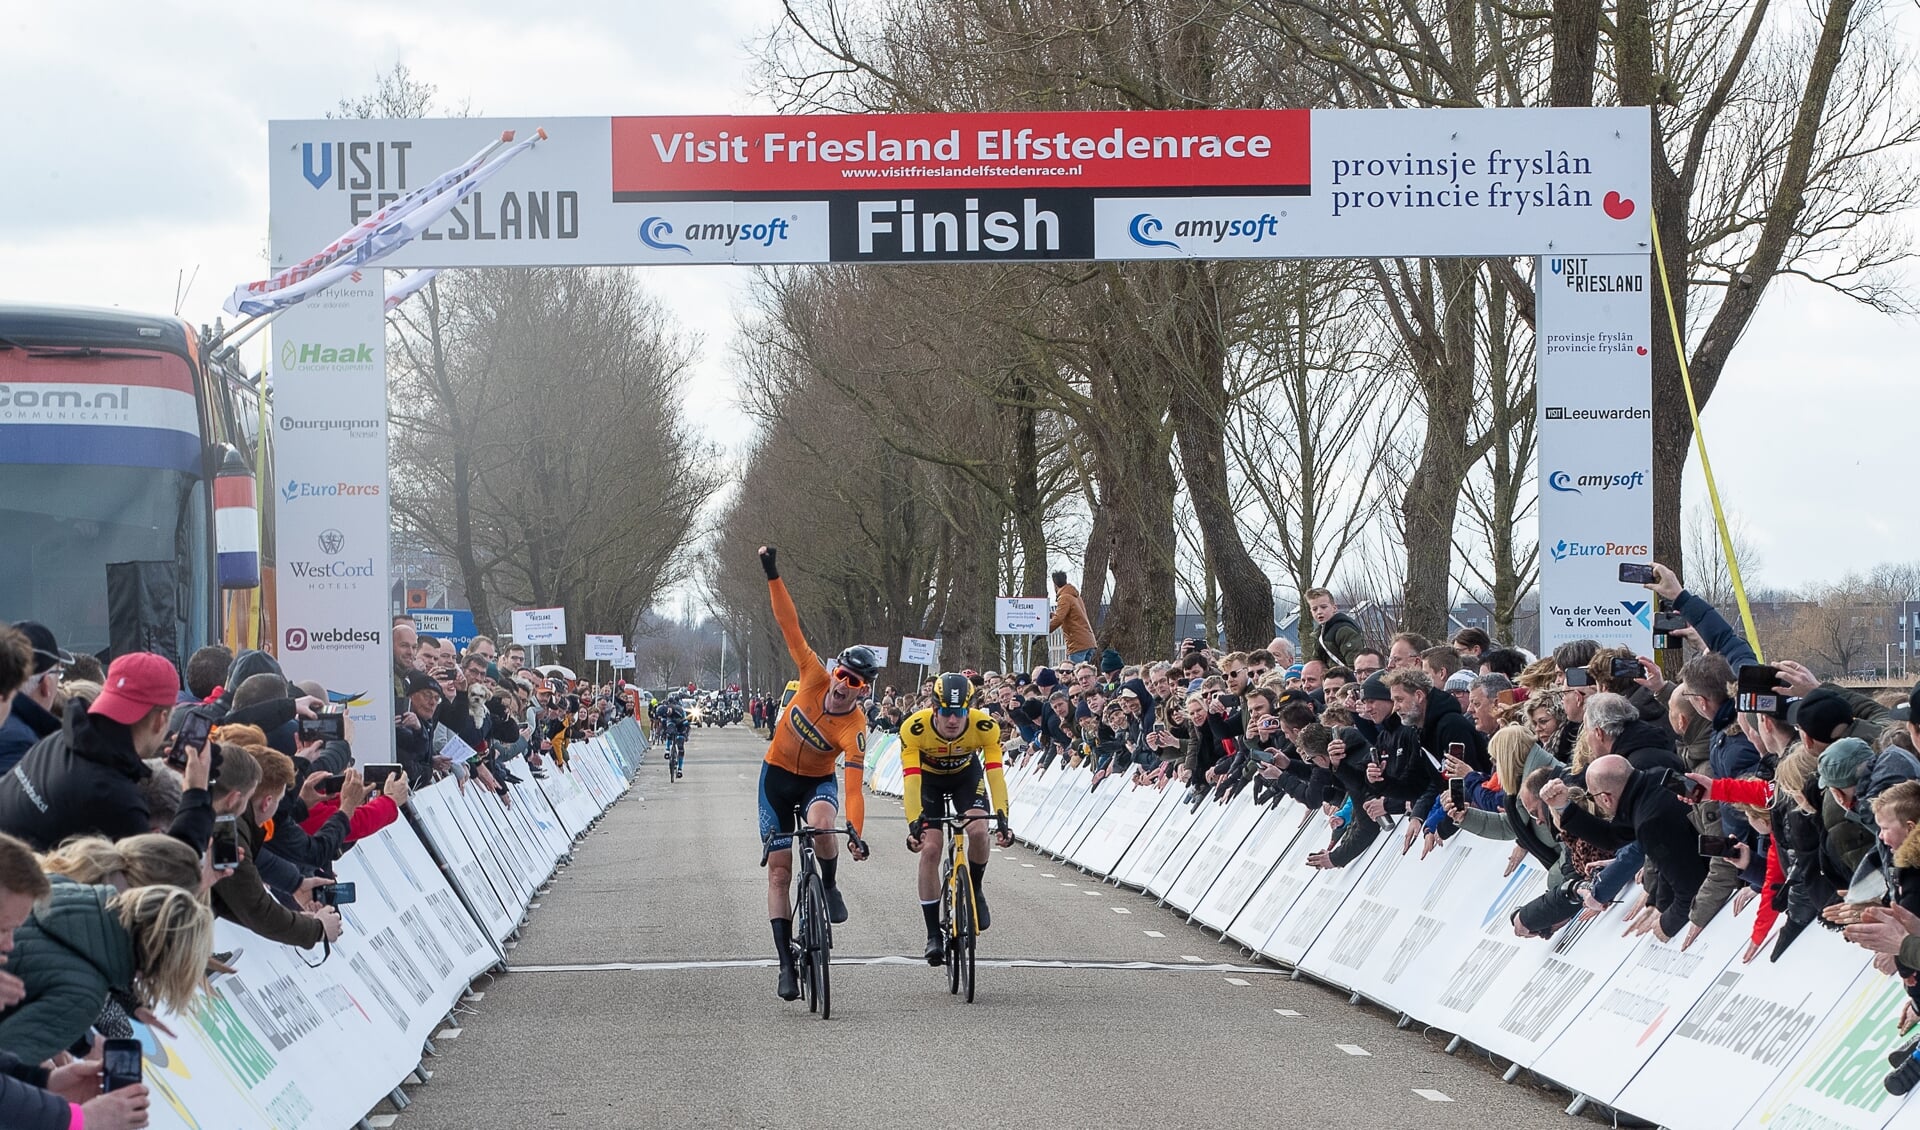 Vorig jaar werd de Visit Friesland Elfstedenrace gewonnen door Elmar Reinders.